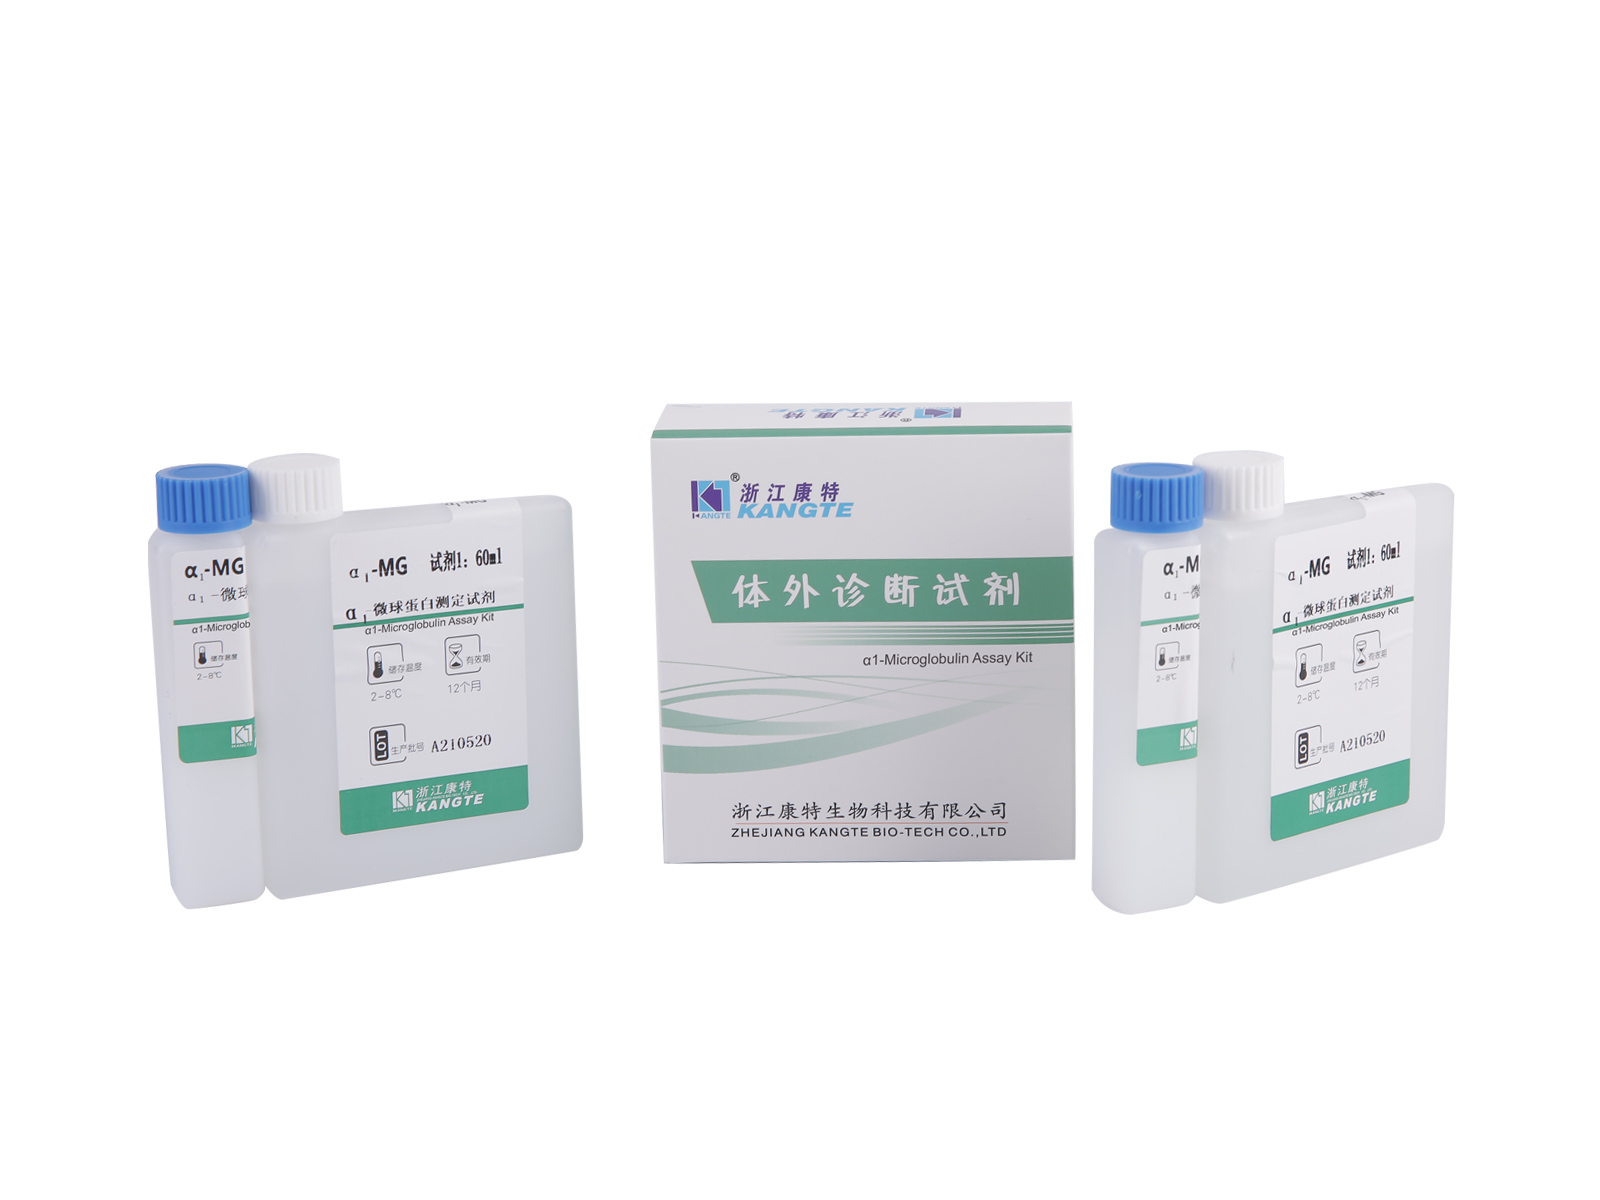 【α1-MG】 α1-Microglobulin Assay Kit (Metoda imunoturbidimetrică îmbunătățită cu latex)